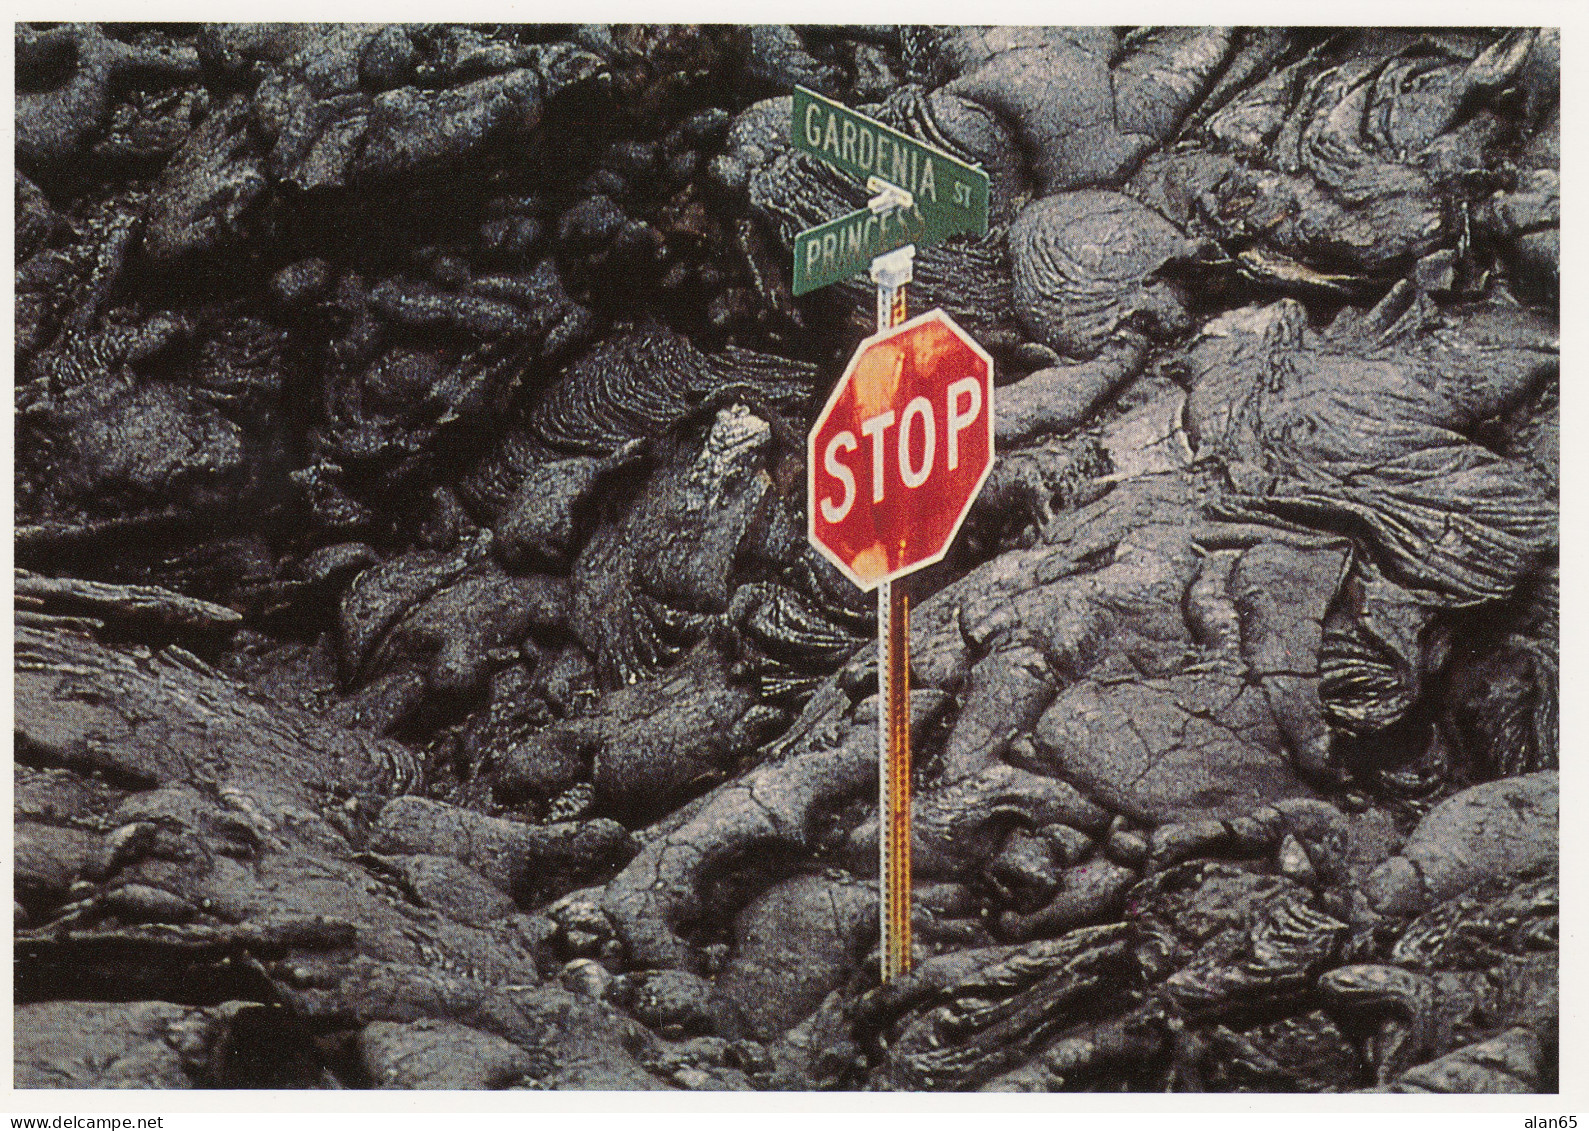 Big Island Of Hawaii, Kilauea Volcano Lava Flow And Street Sign, C1990s/2000s Vintage Postcard - Hawaï